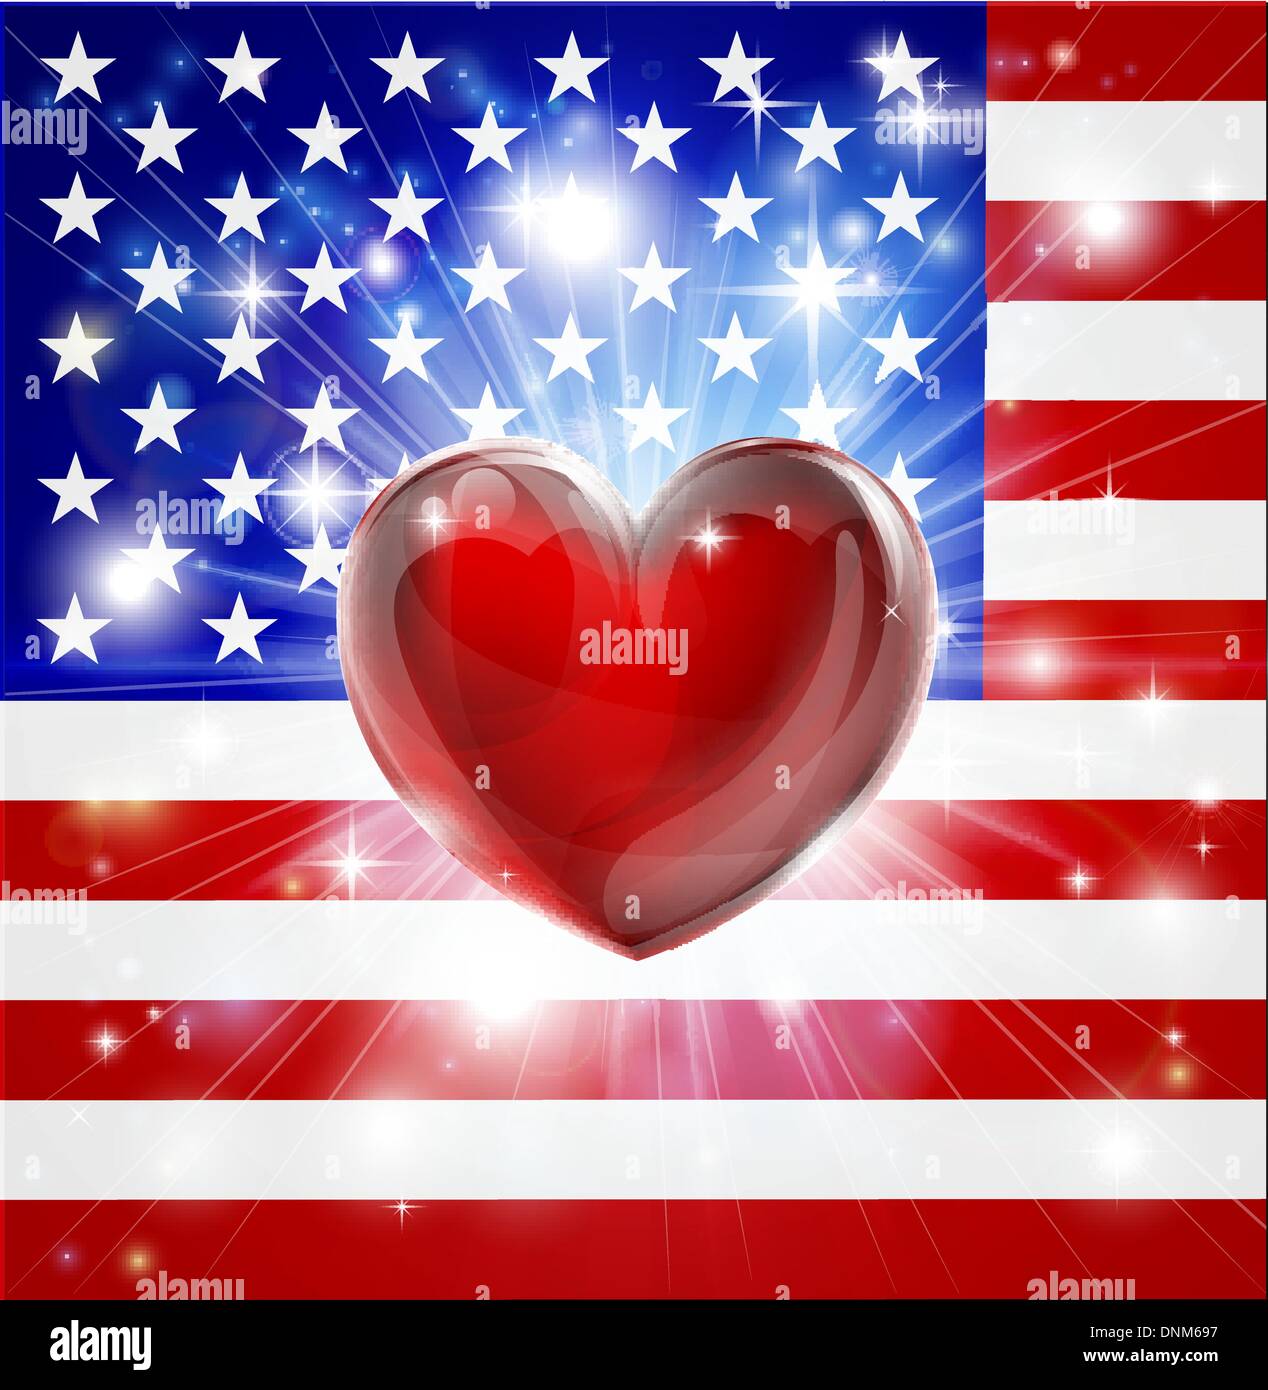 Pavillon de l'America avec fond patriotique ou pyrotechniques light burst et coeur d'amour dans le centre Illustration de Vecteur